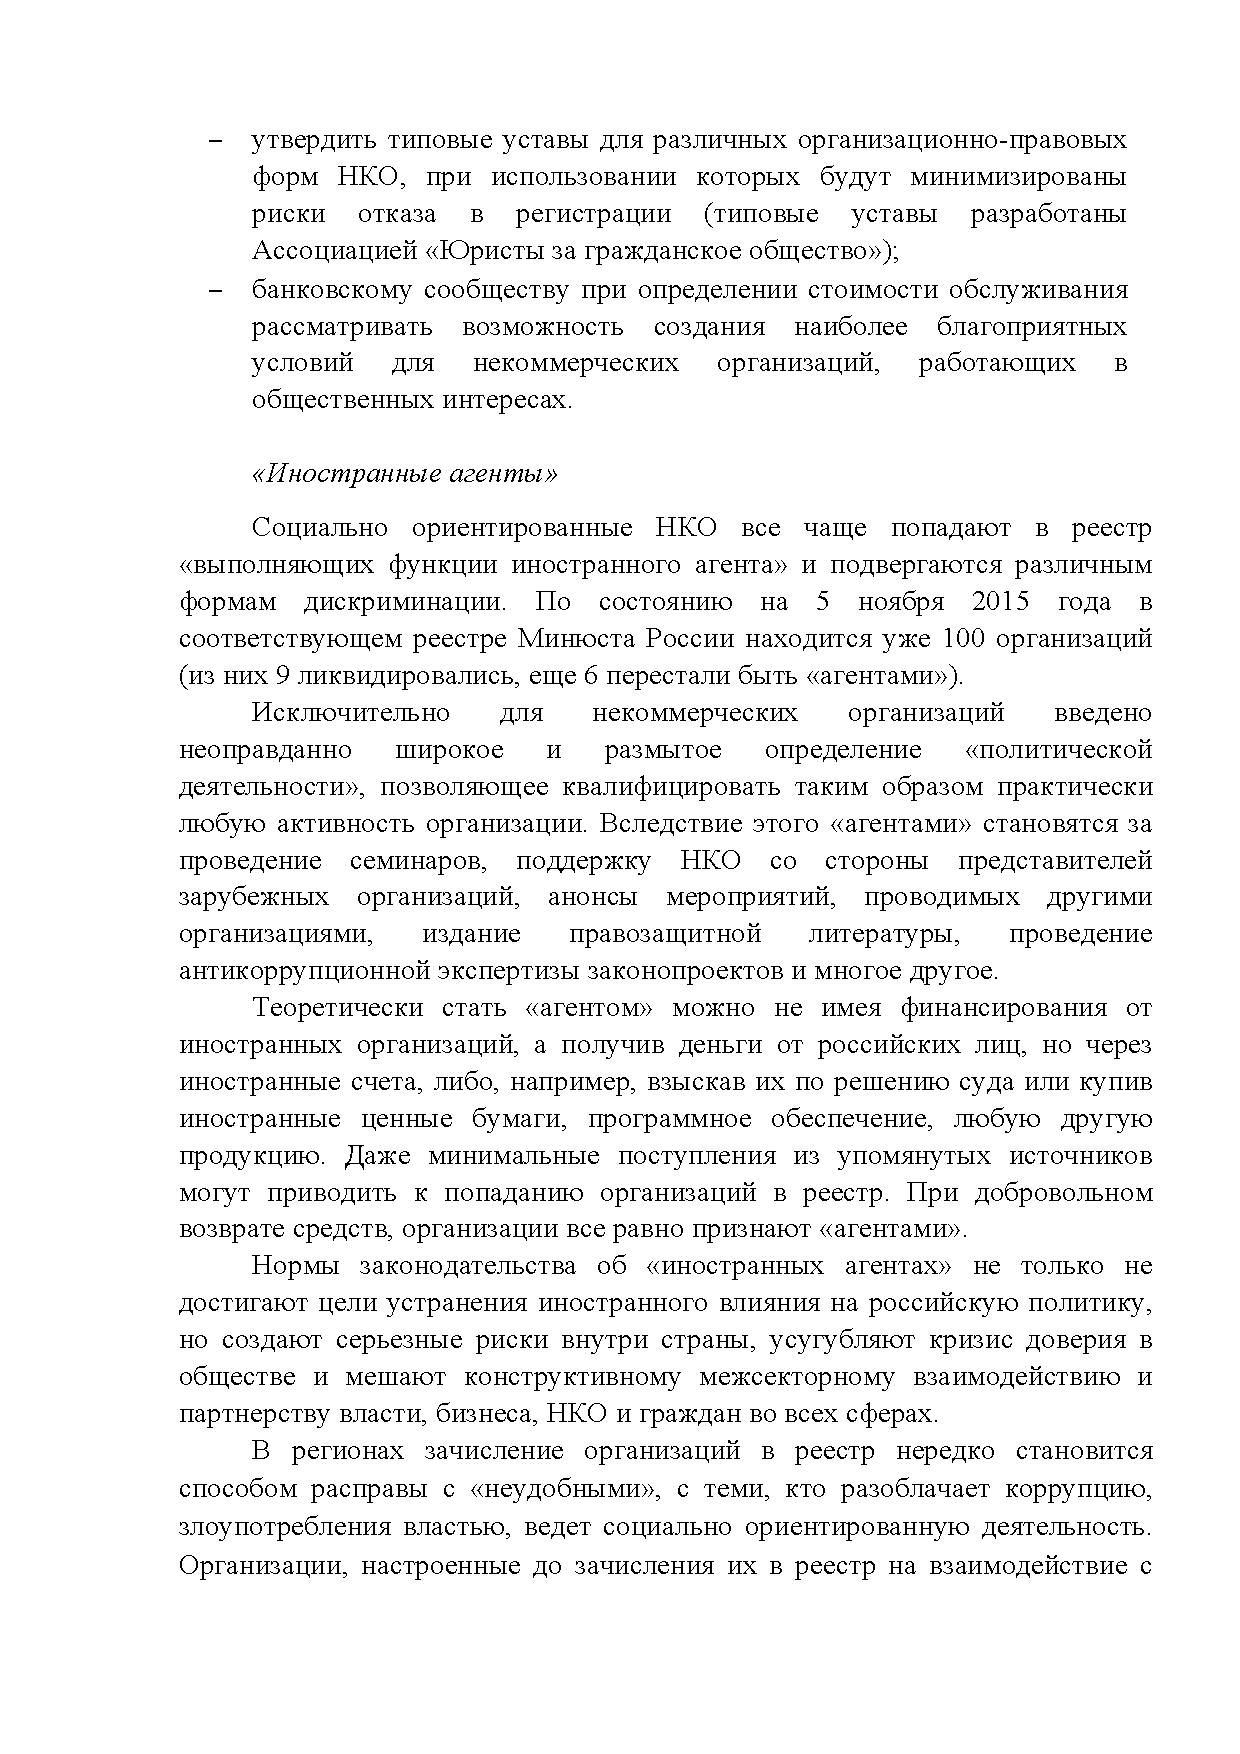  Опубликованы Предложения Общероссийского гражданского форума 2015 - фото 4